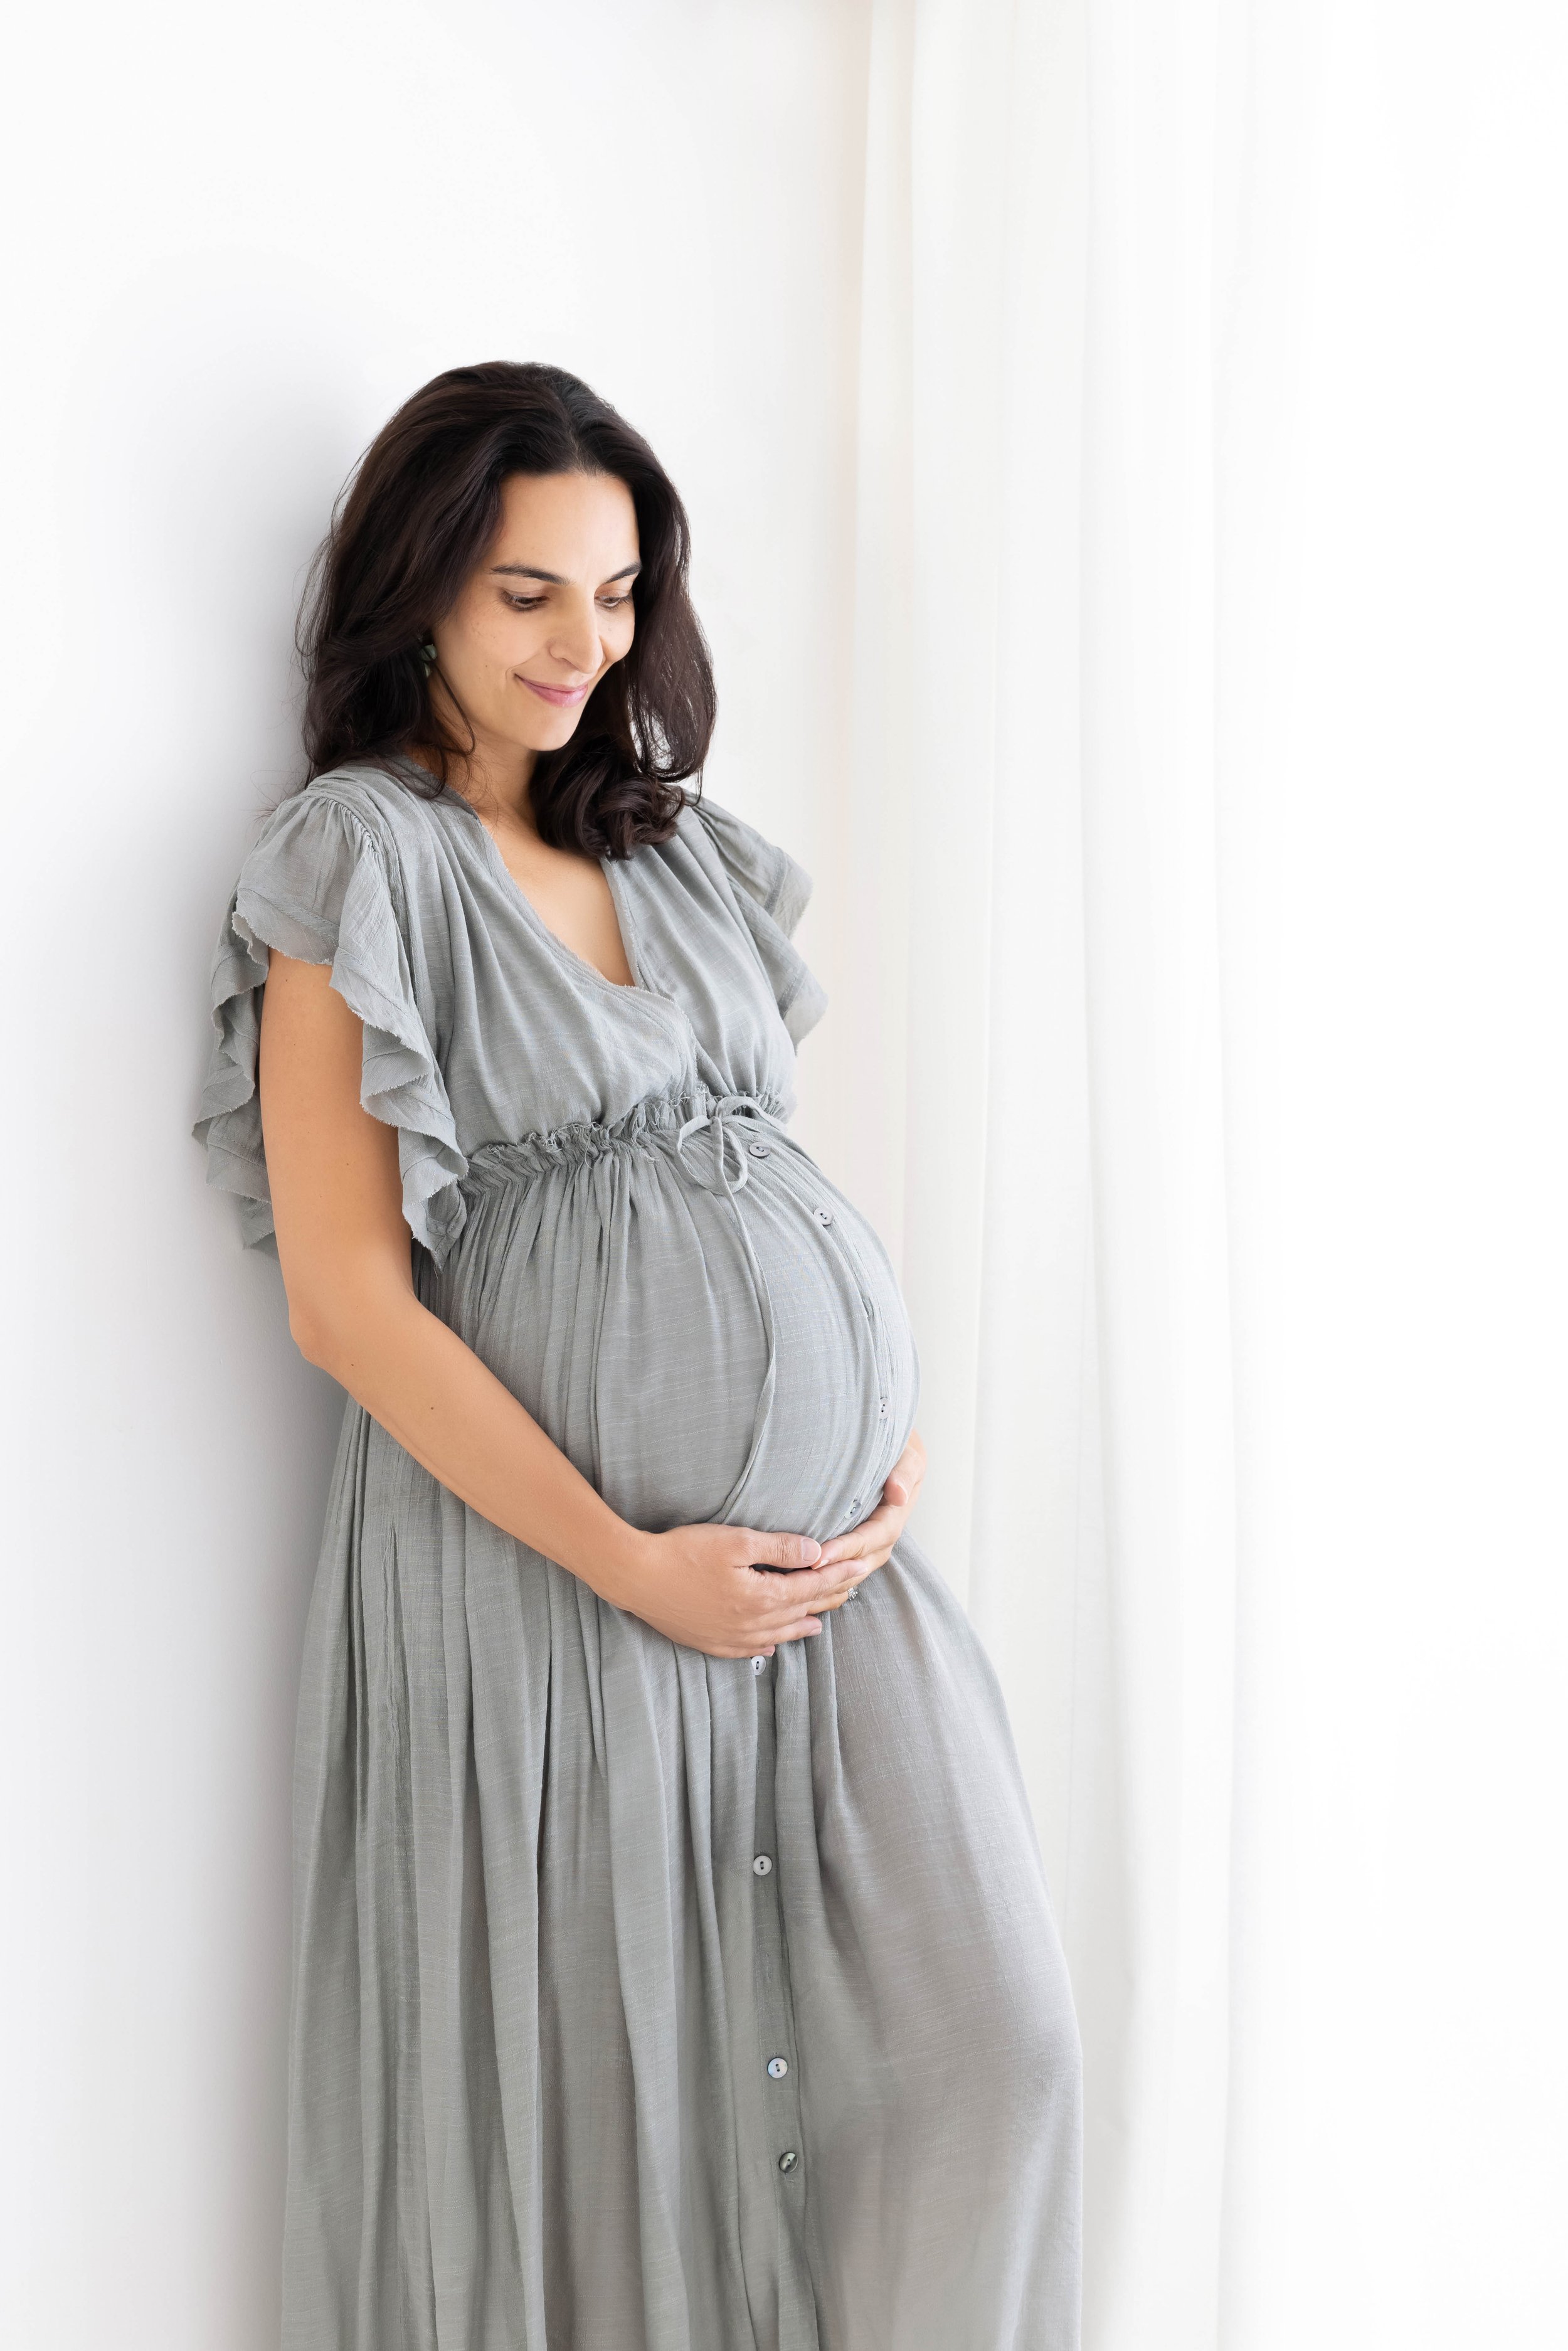 femme enceinte en robe longue pour photoshoot (Copy)